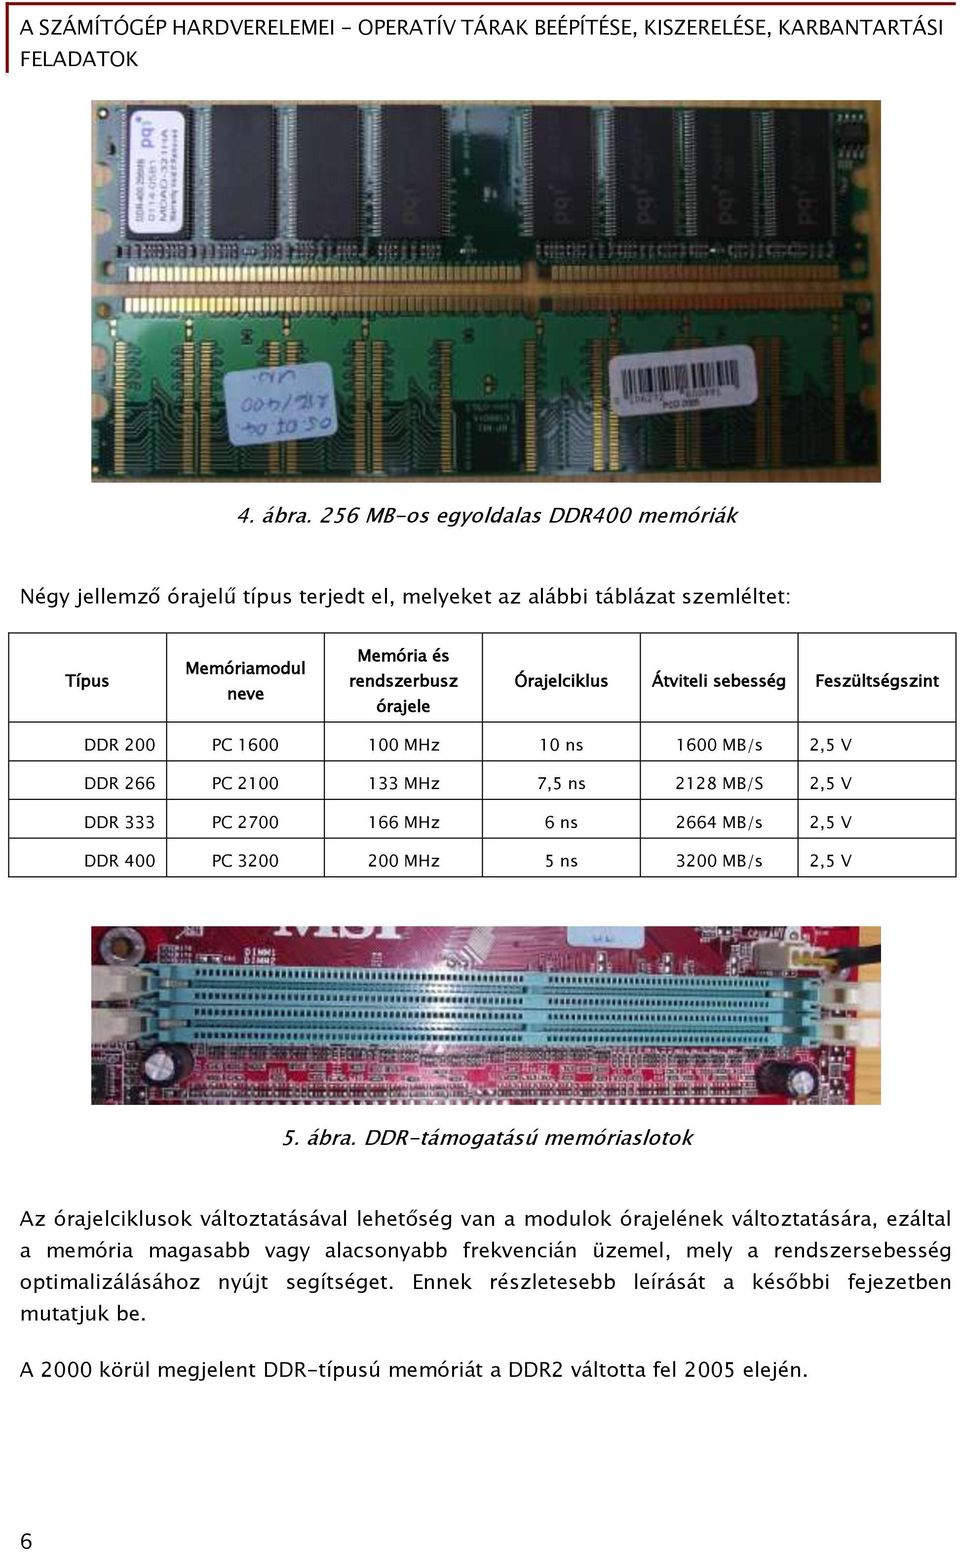 sebesség Feszültségszint DDR 200 PC 1600 100 MHz 10 ns 1600 MB/s 2,5 V DDR 266 PC 2100 133 MHz 7,5 ns 2128 MB/S 2,5 V DDR 333 PC 2700 166 MHz 6 ns 2664 MB/s 2,5 V DDR 400 PC 3200 200 MHz 5 ns 3200